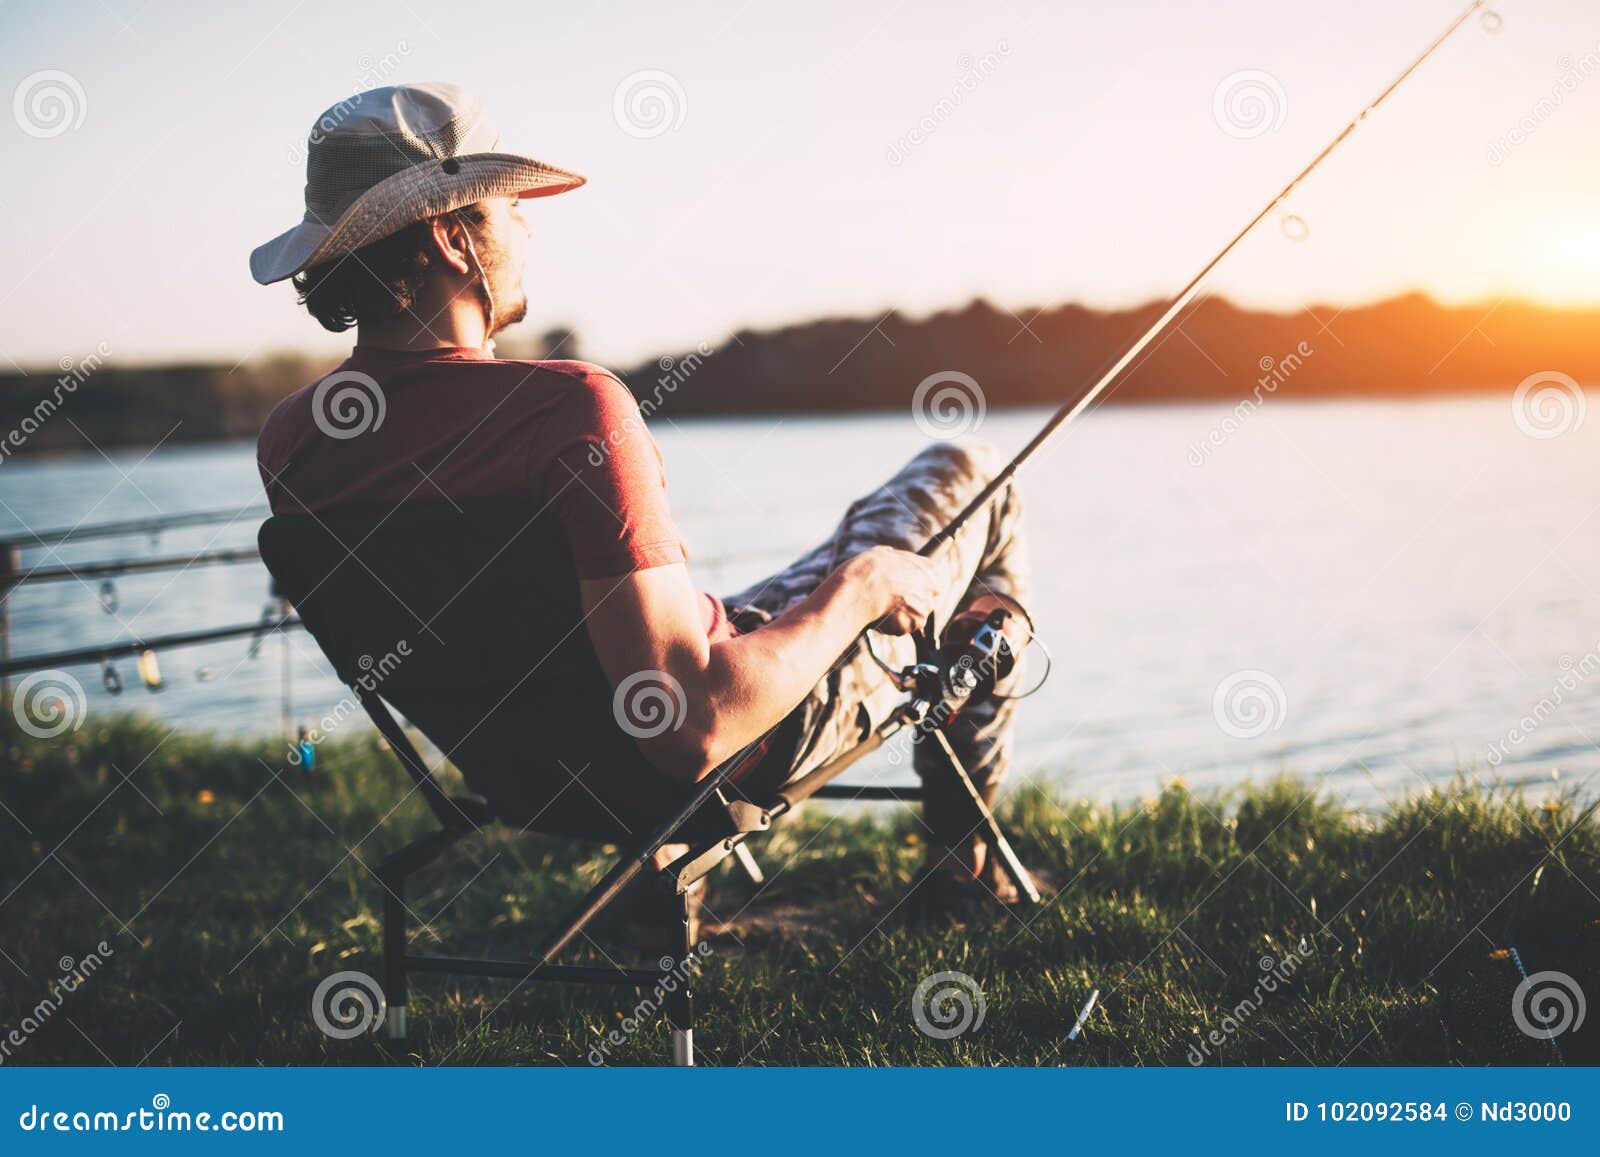 young man fishing at pond and enjoying hobby